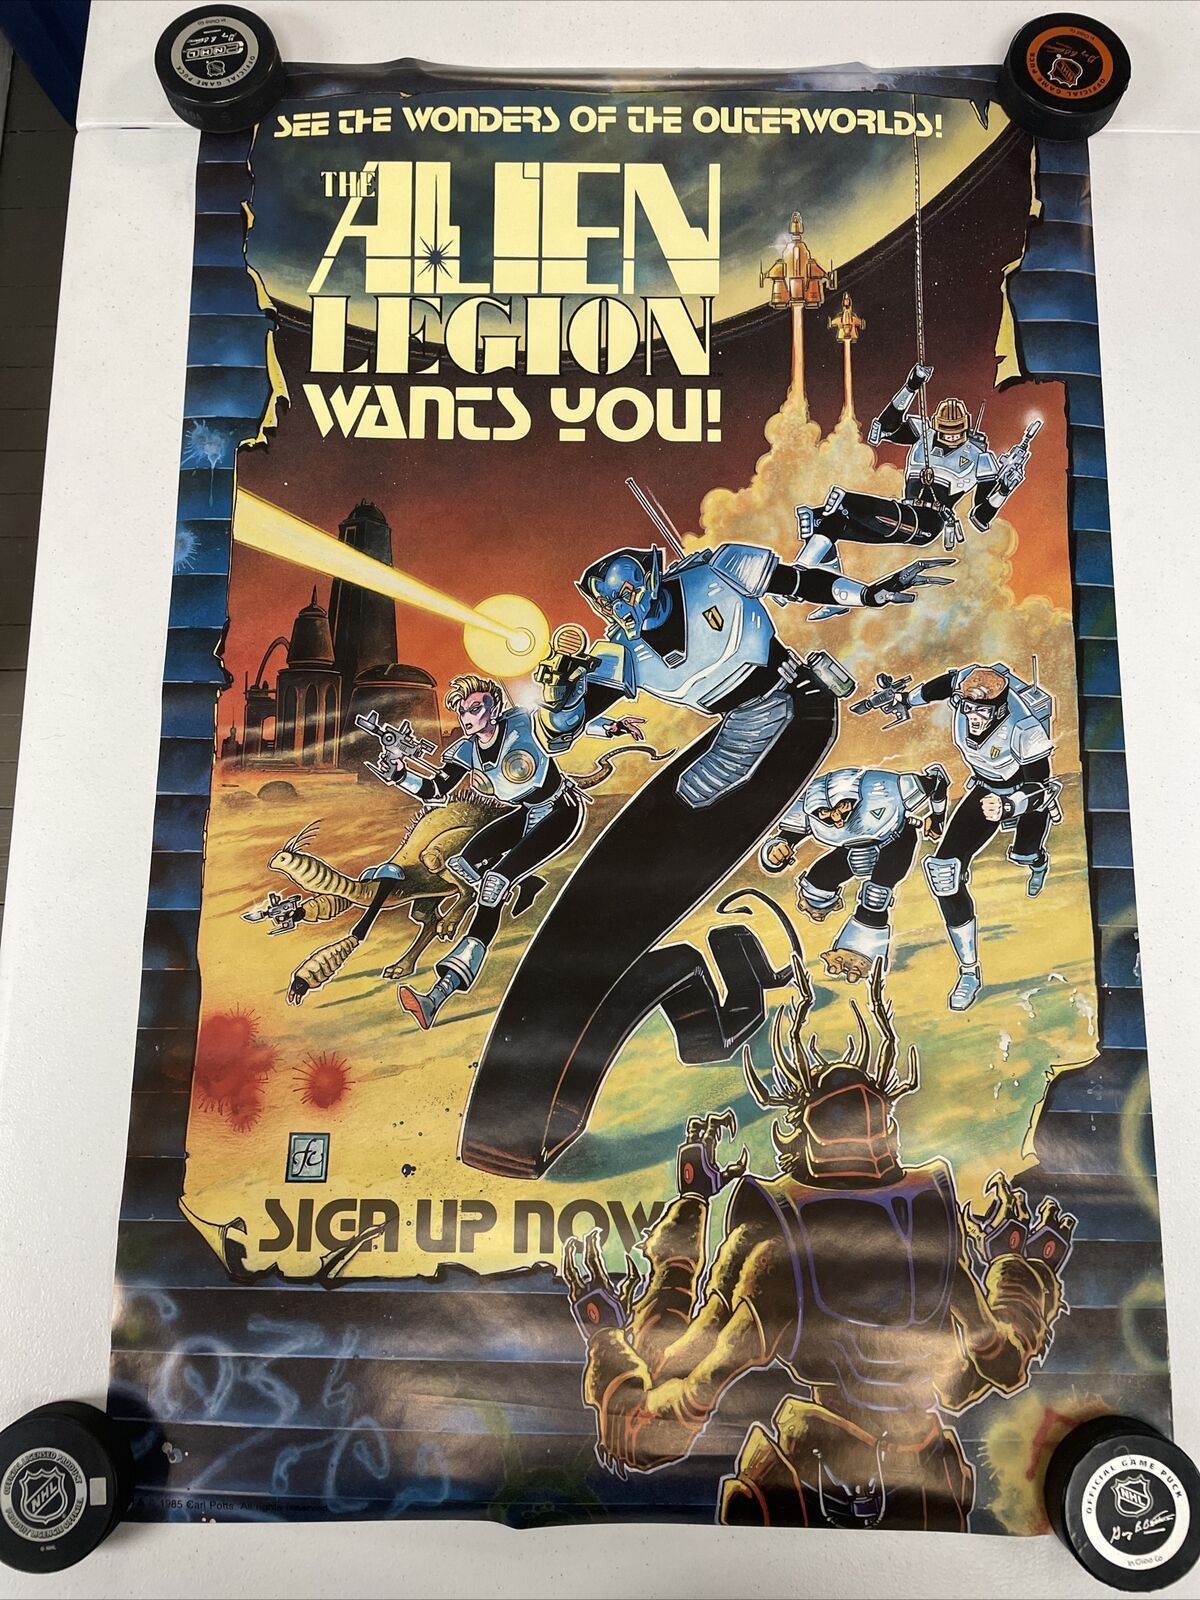 Vintage 1985 Alien Legion Epic Comics Poster 22x34 Carl Potts Science Fiction